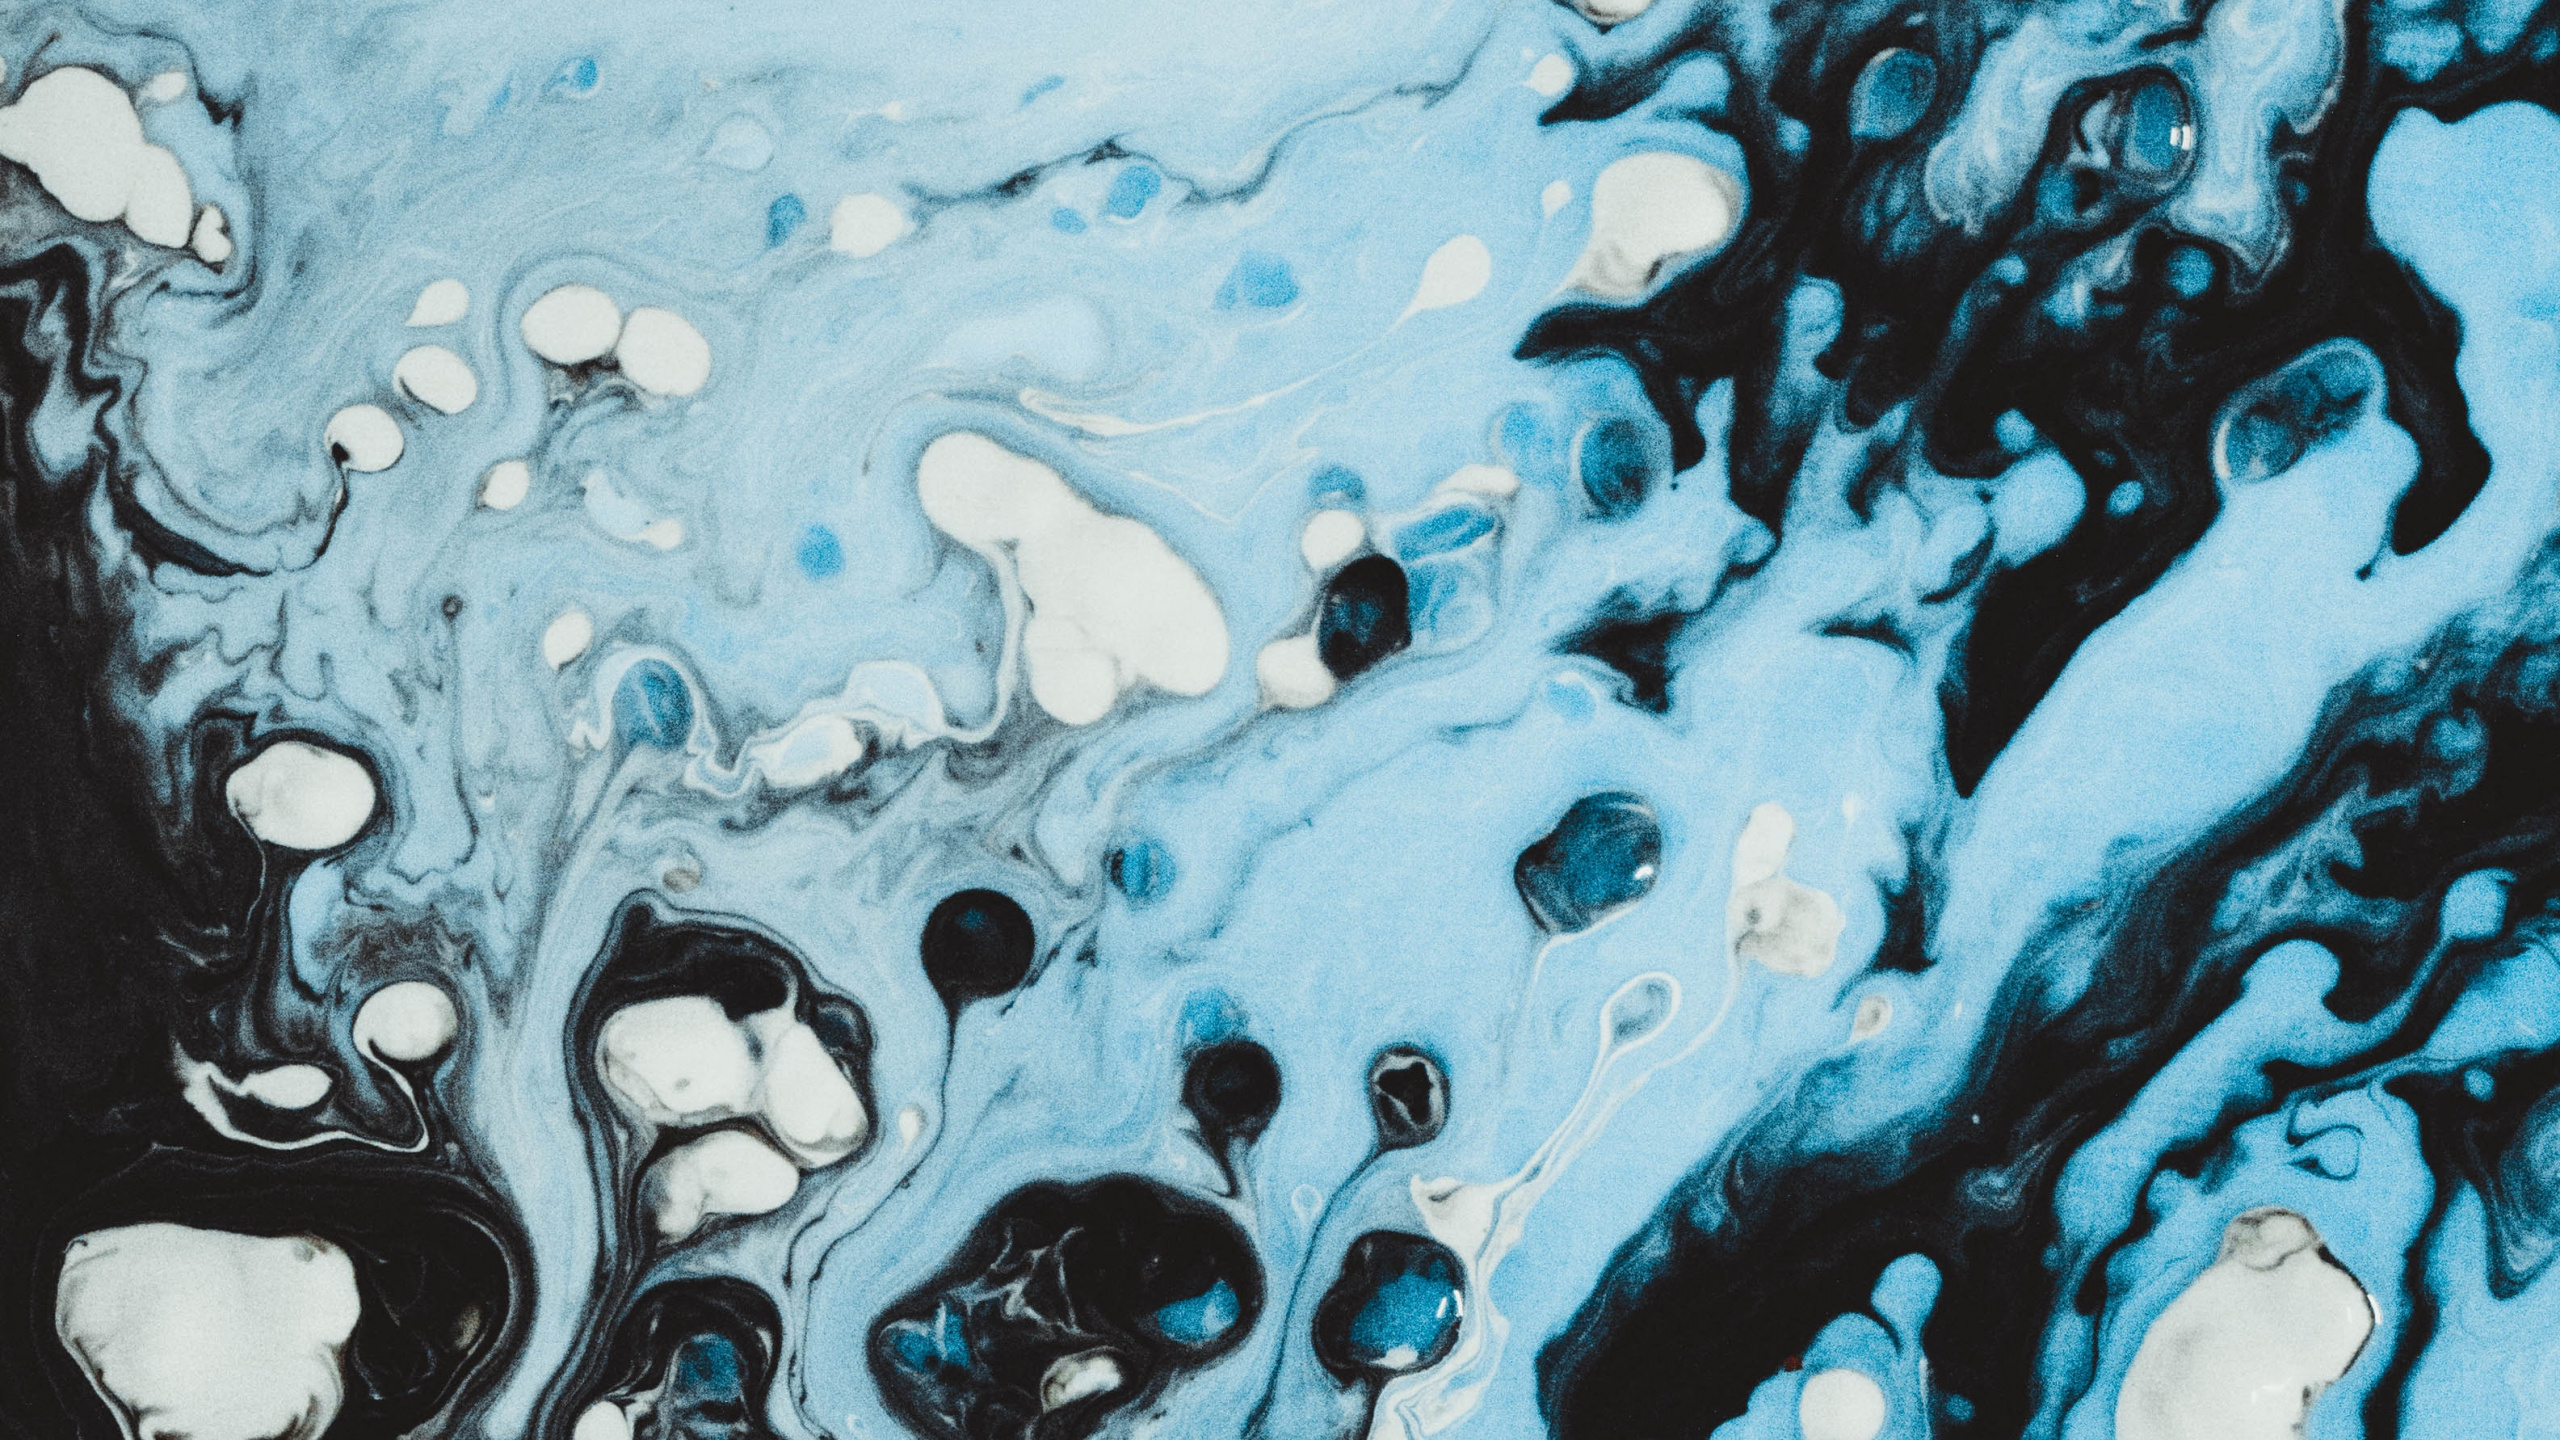 Éclaboussures D'eau Bleue et Blanche. Wallpaper in 2560x1440 Resolution